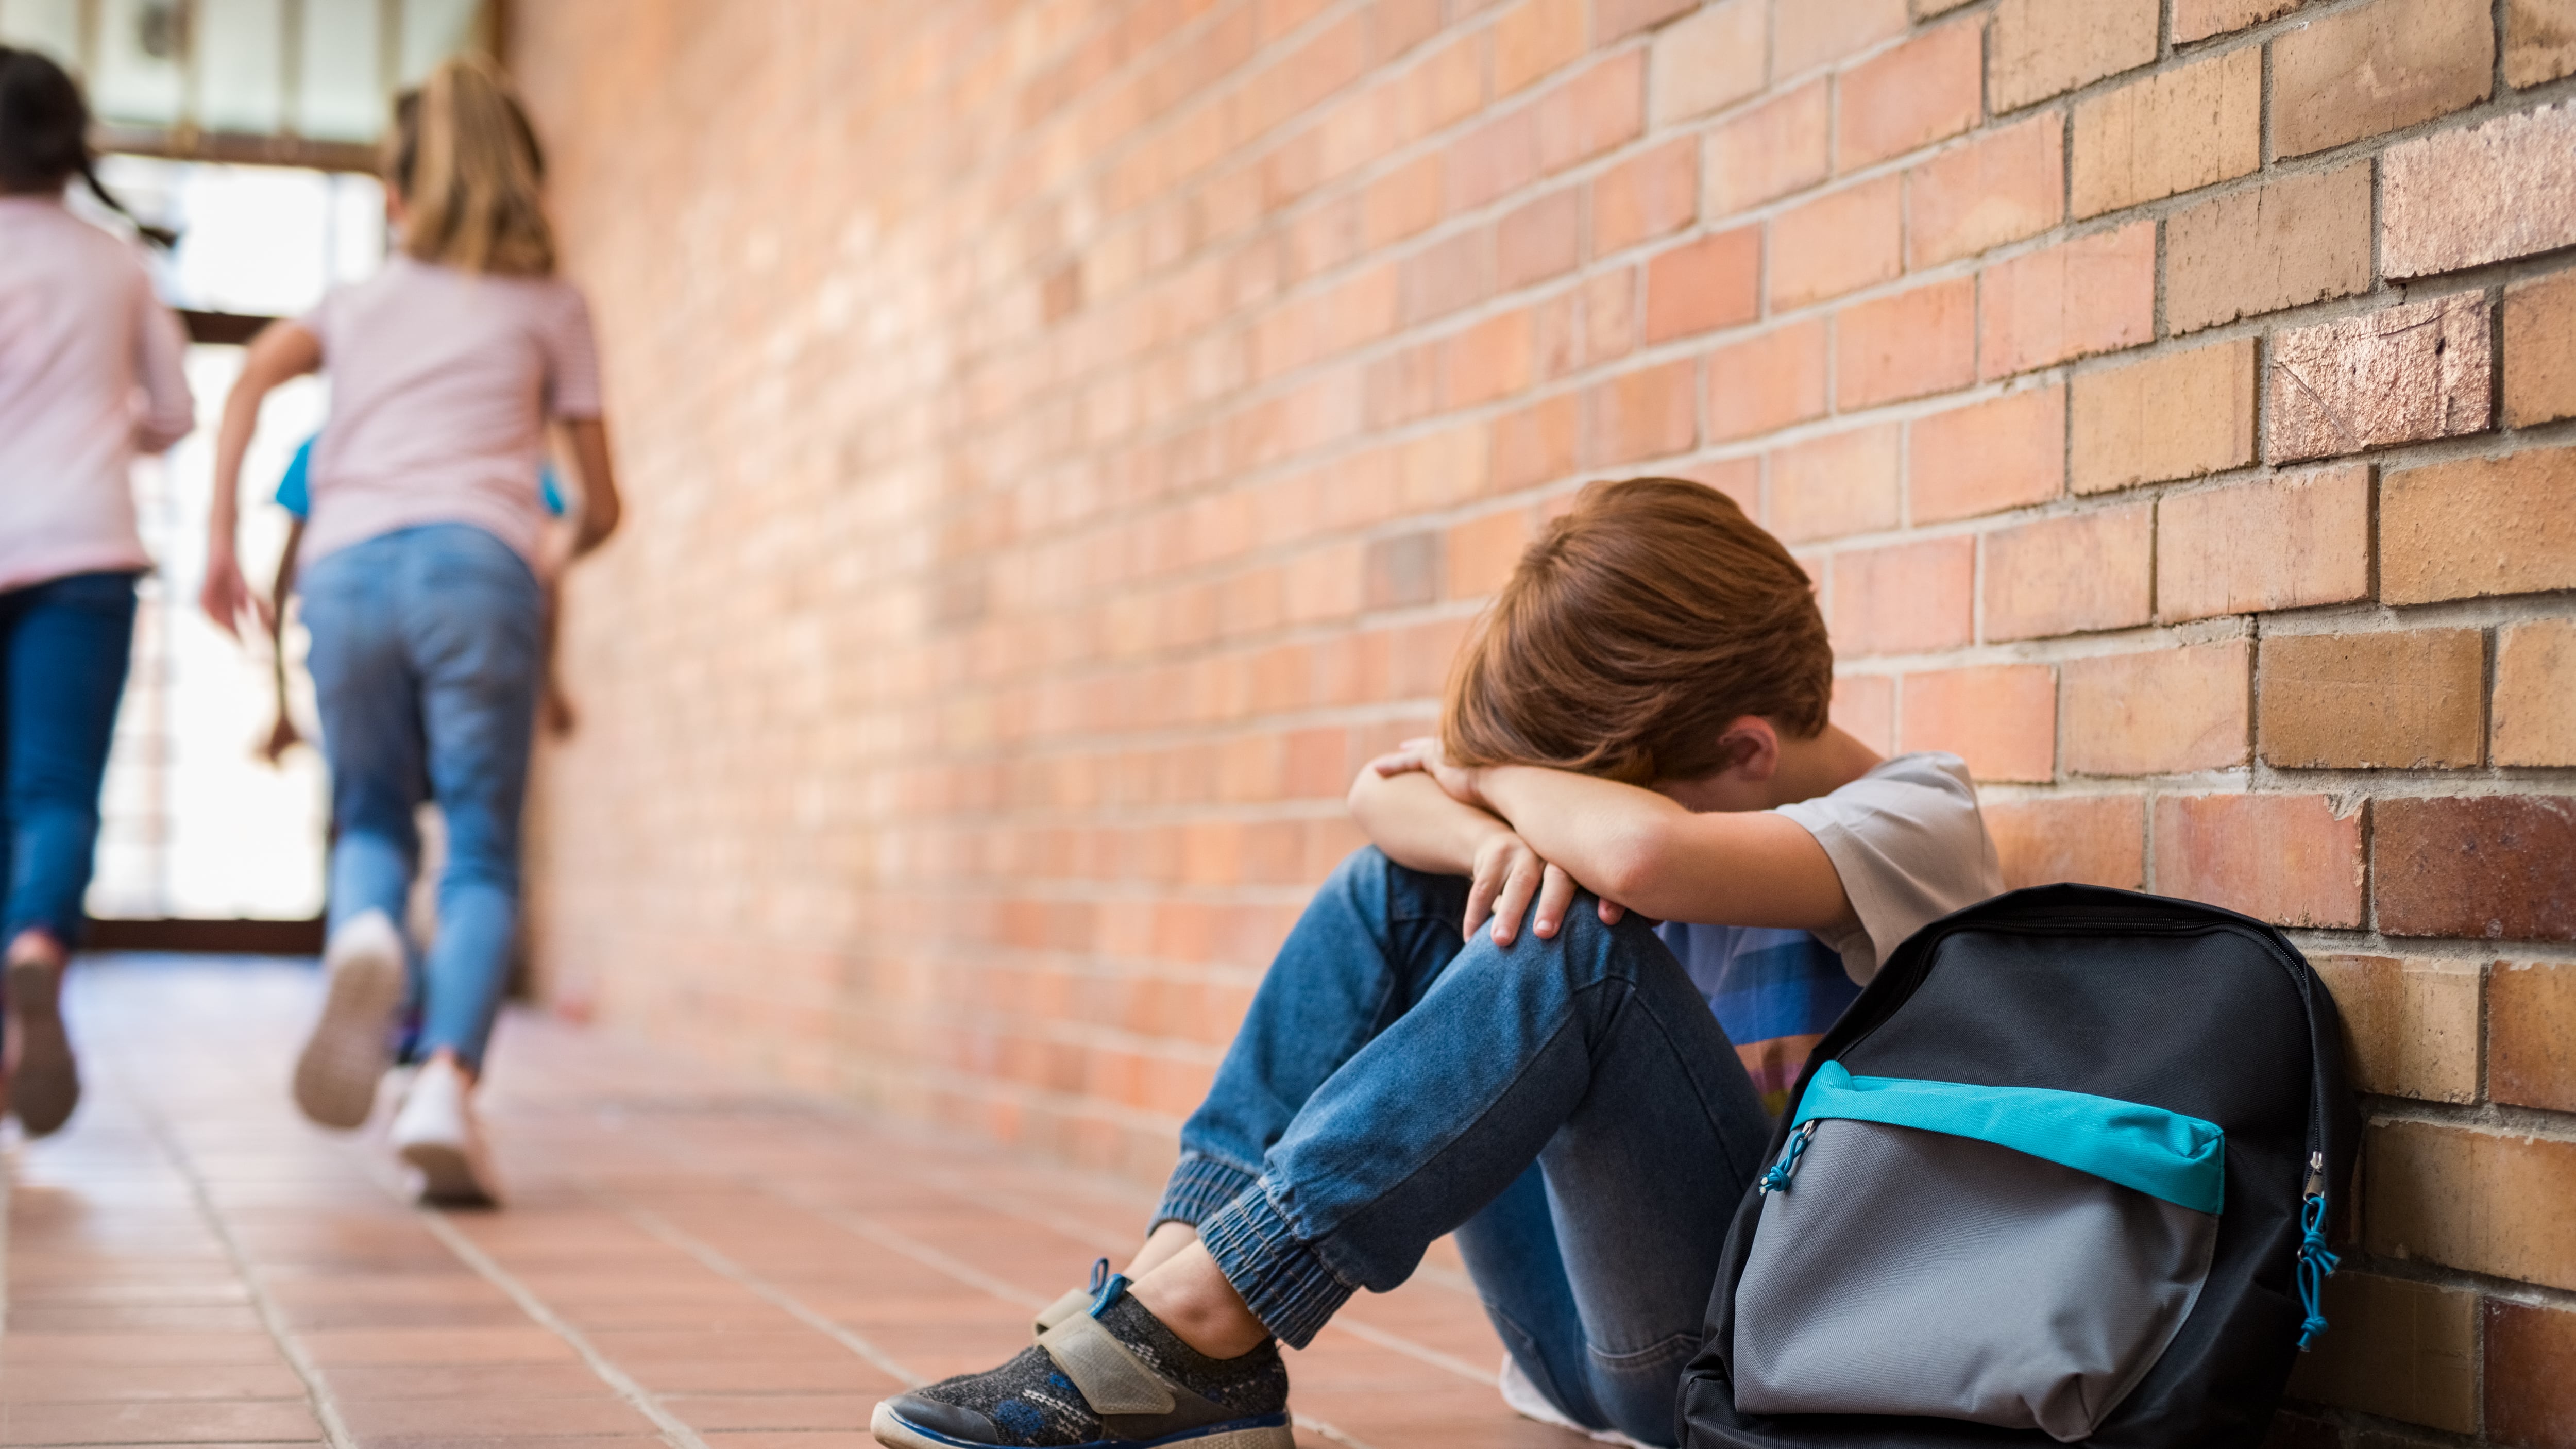 El año pasado hubo 446 casos de acoso escolar reportados la Secretaría de Educación.